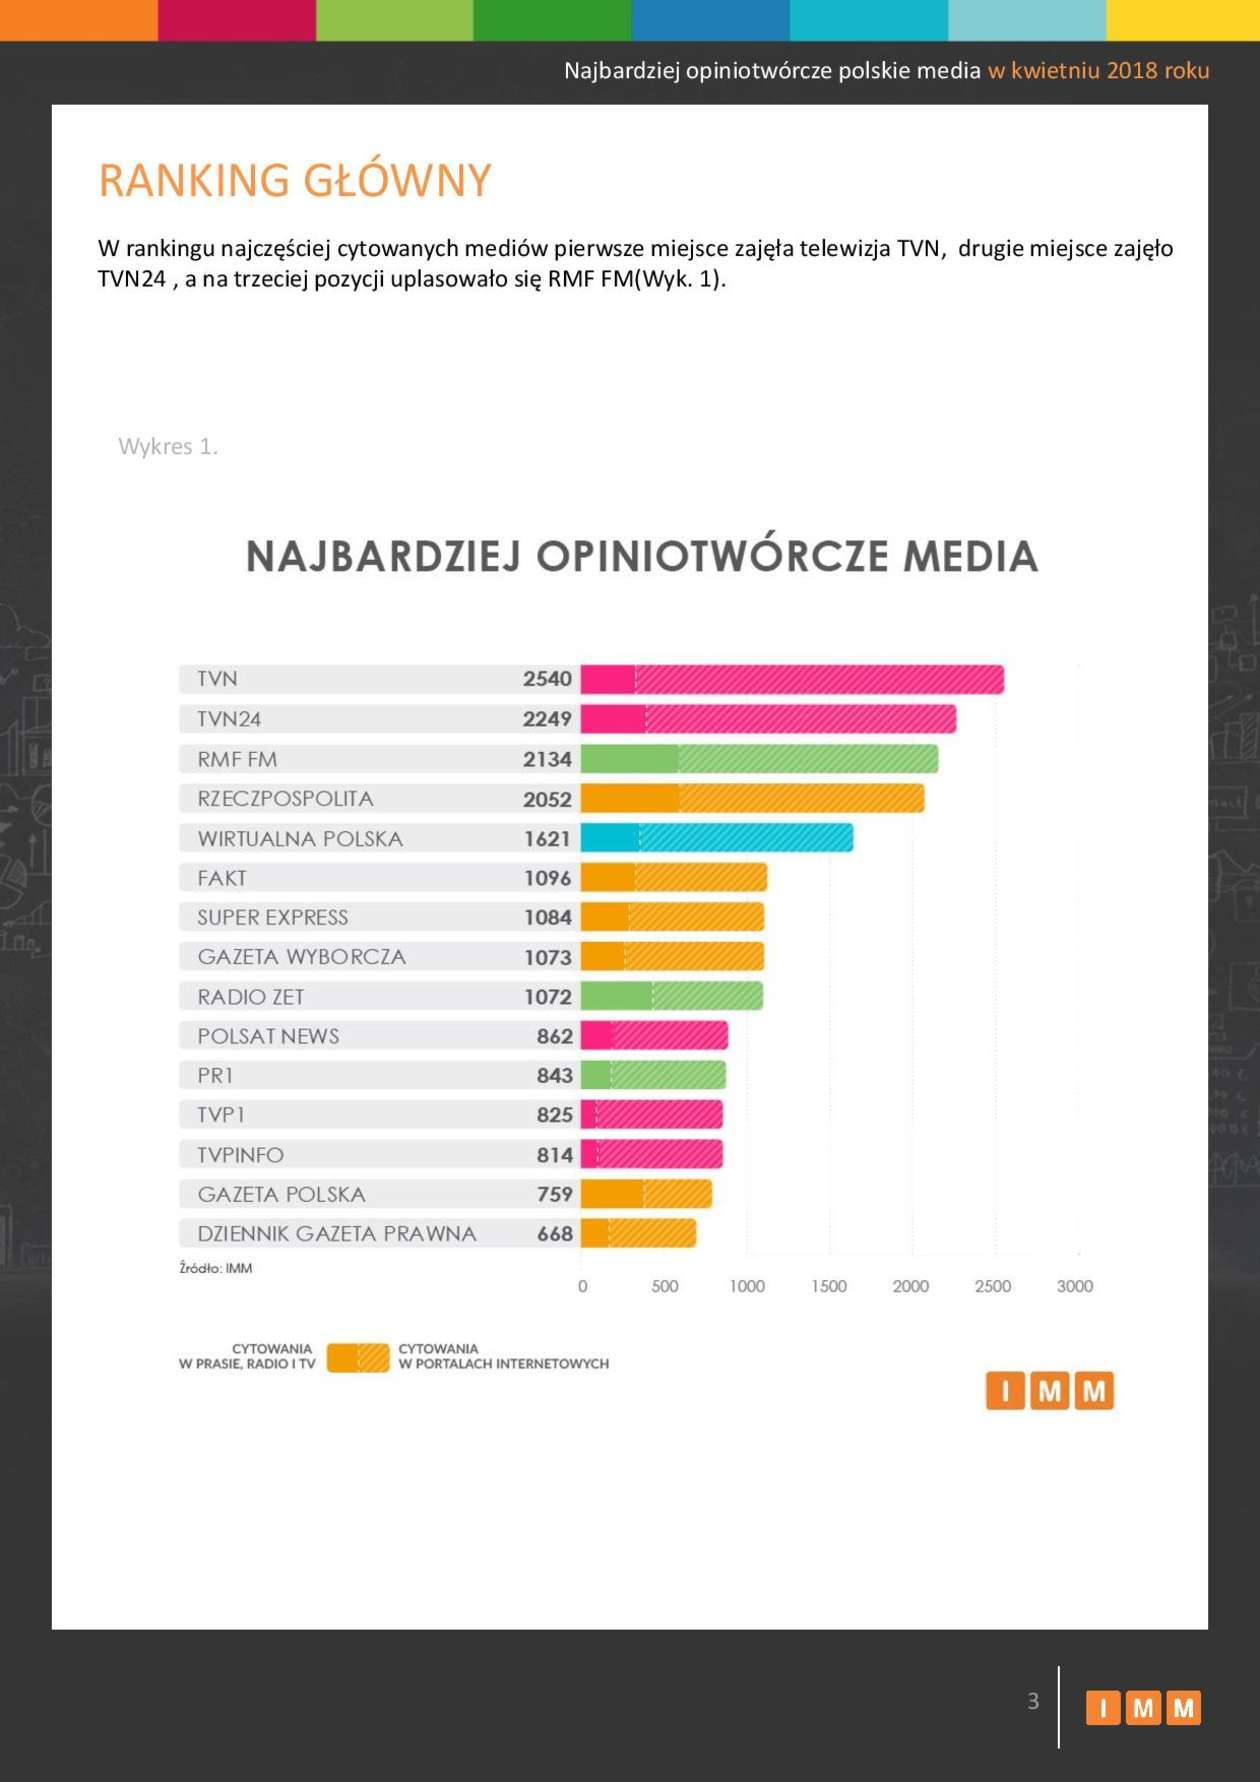  Najbardziej opiniotwórcze polskie media w kwietniu 2018 roku (zdjęcie 3) - Autor: Instytut Monitorowania Mediów